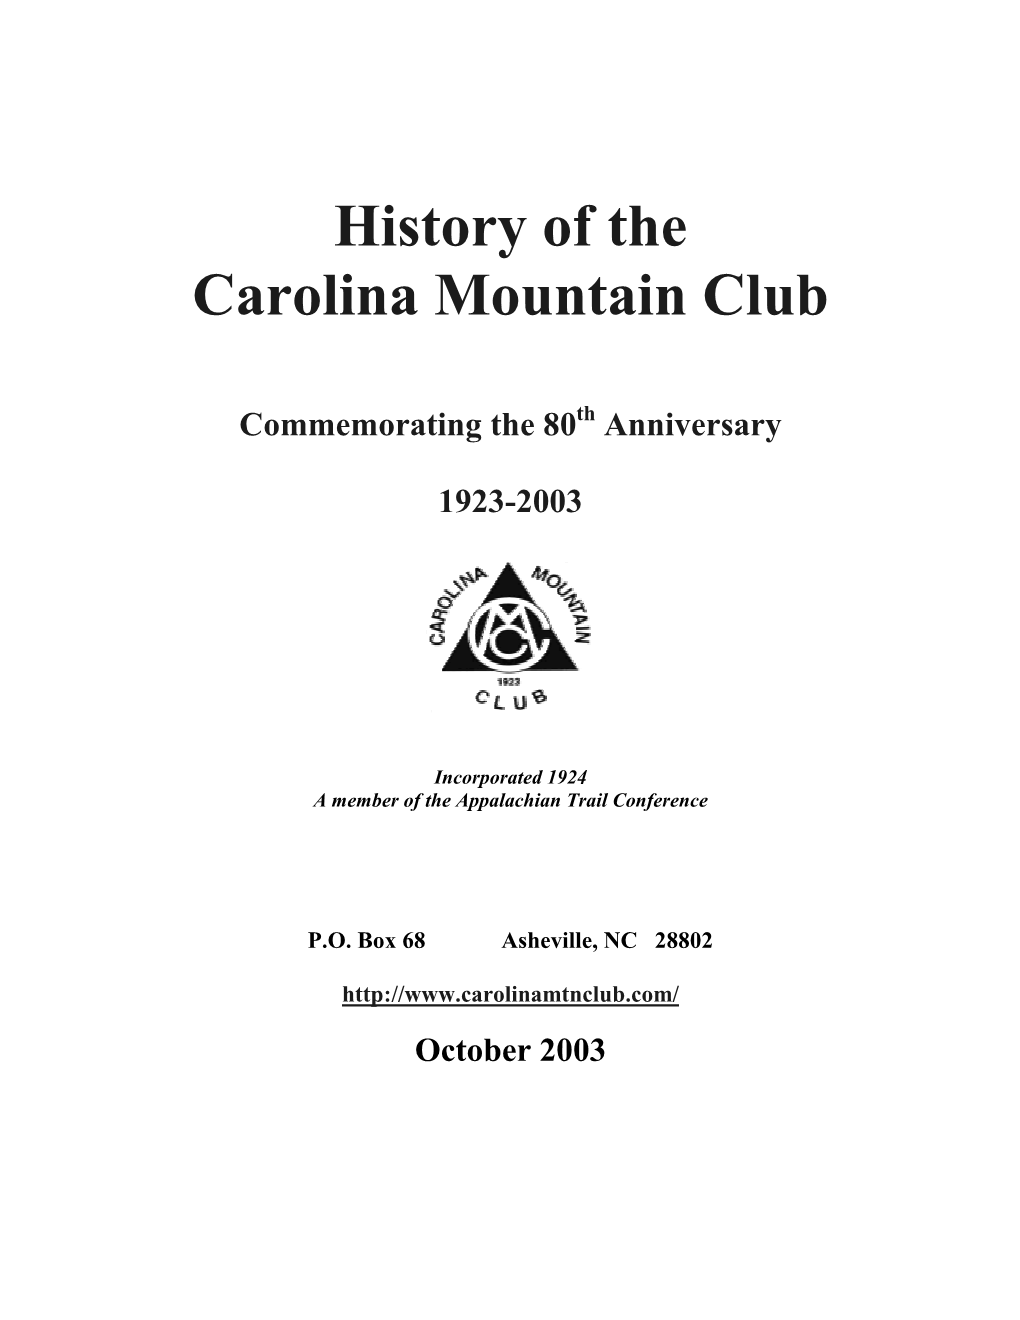 History of the Carolina Mountain Club